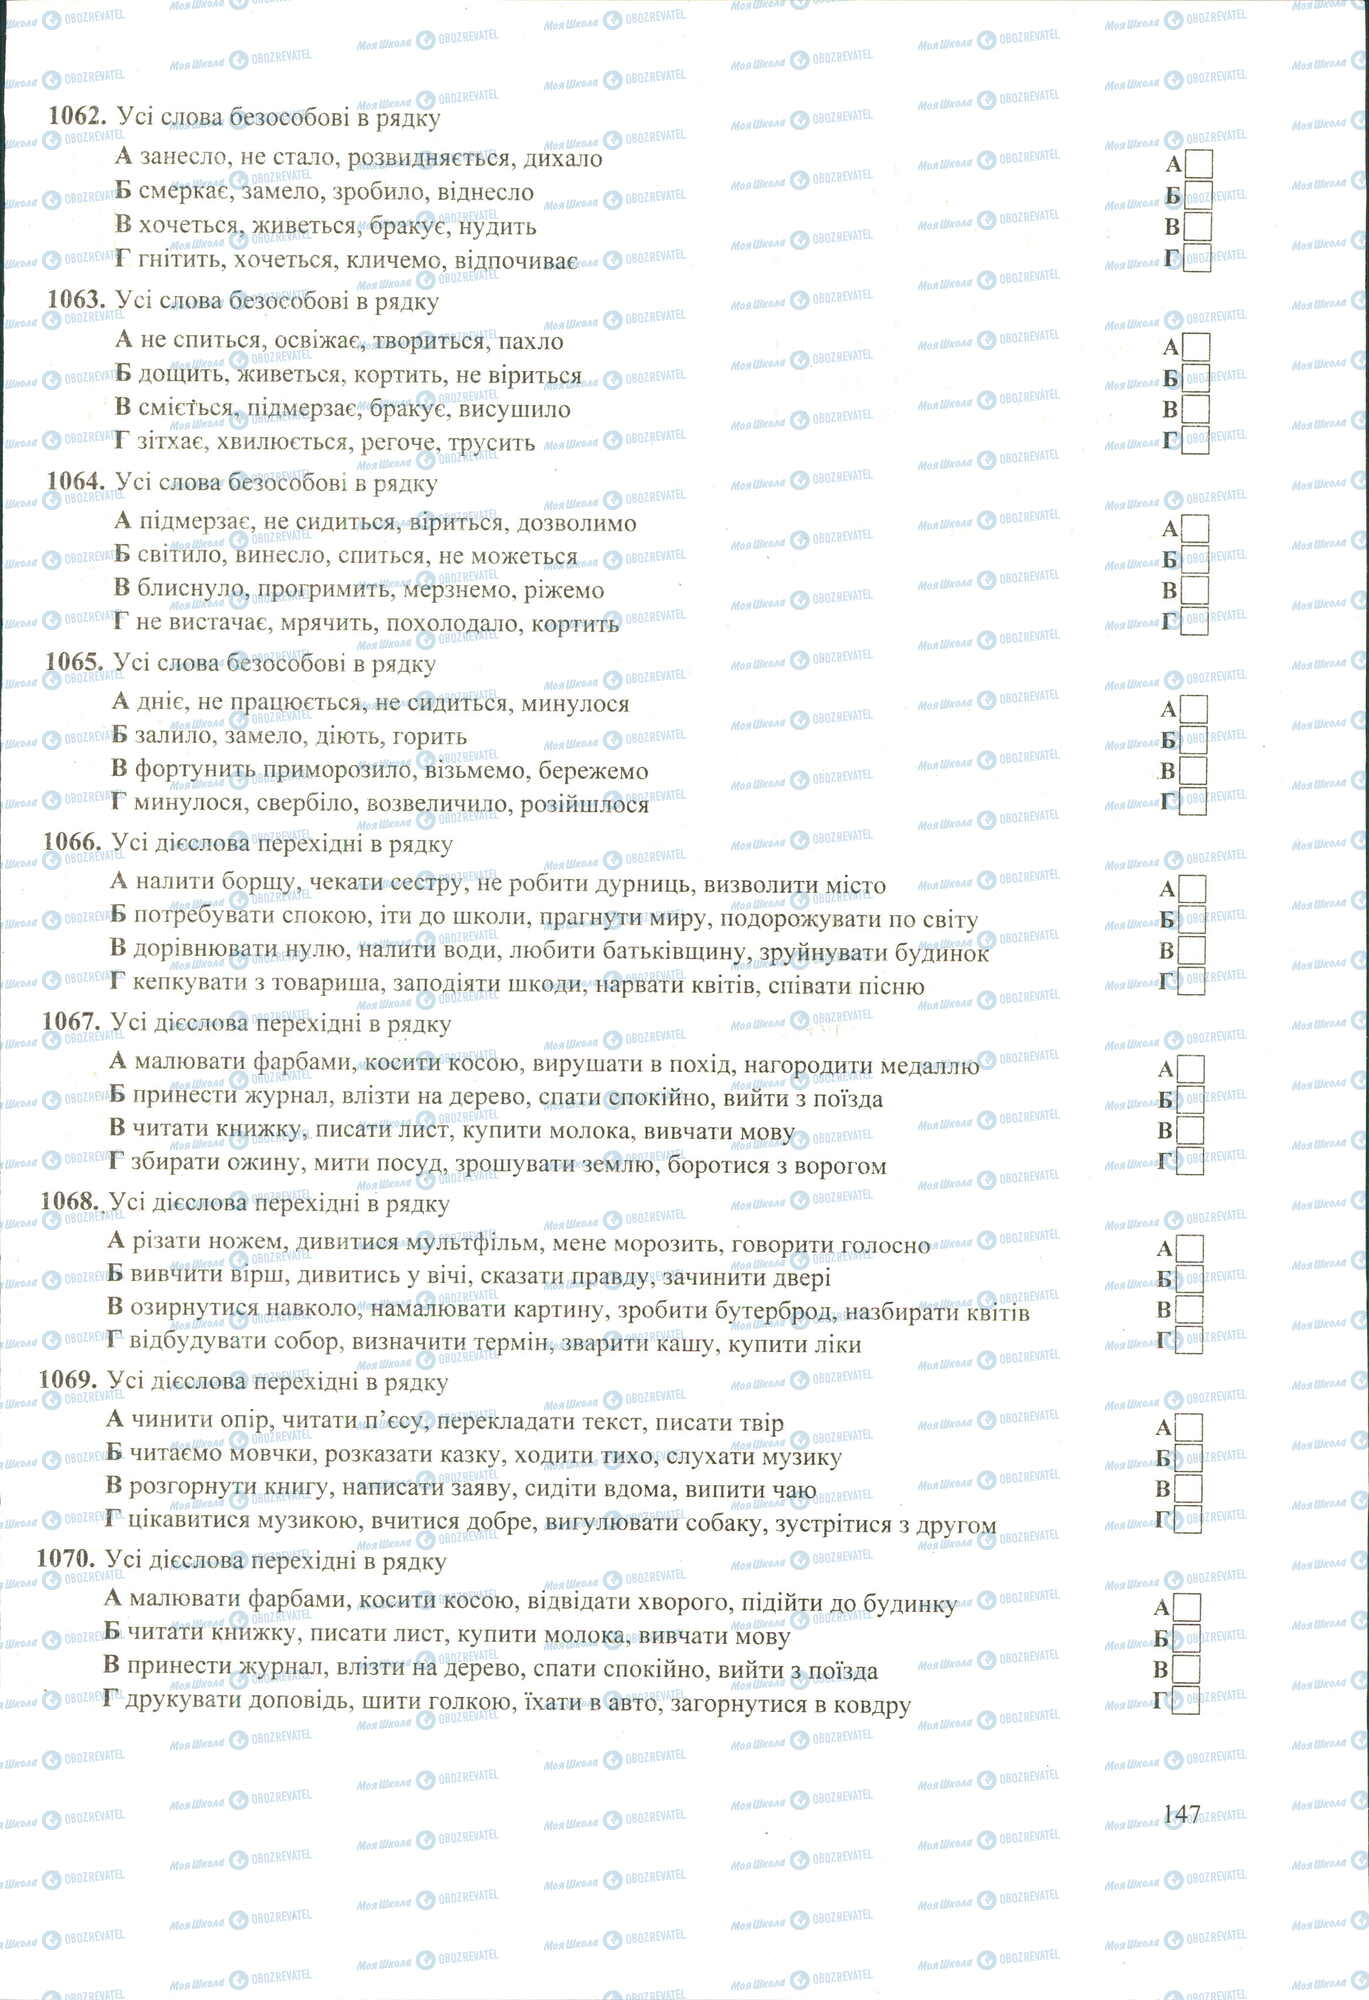 ЗНО Укр мова 11 класс страница 1062-1070